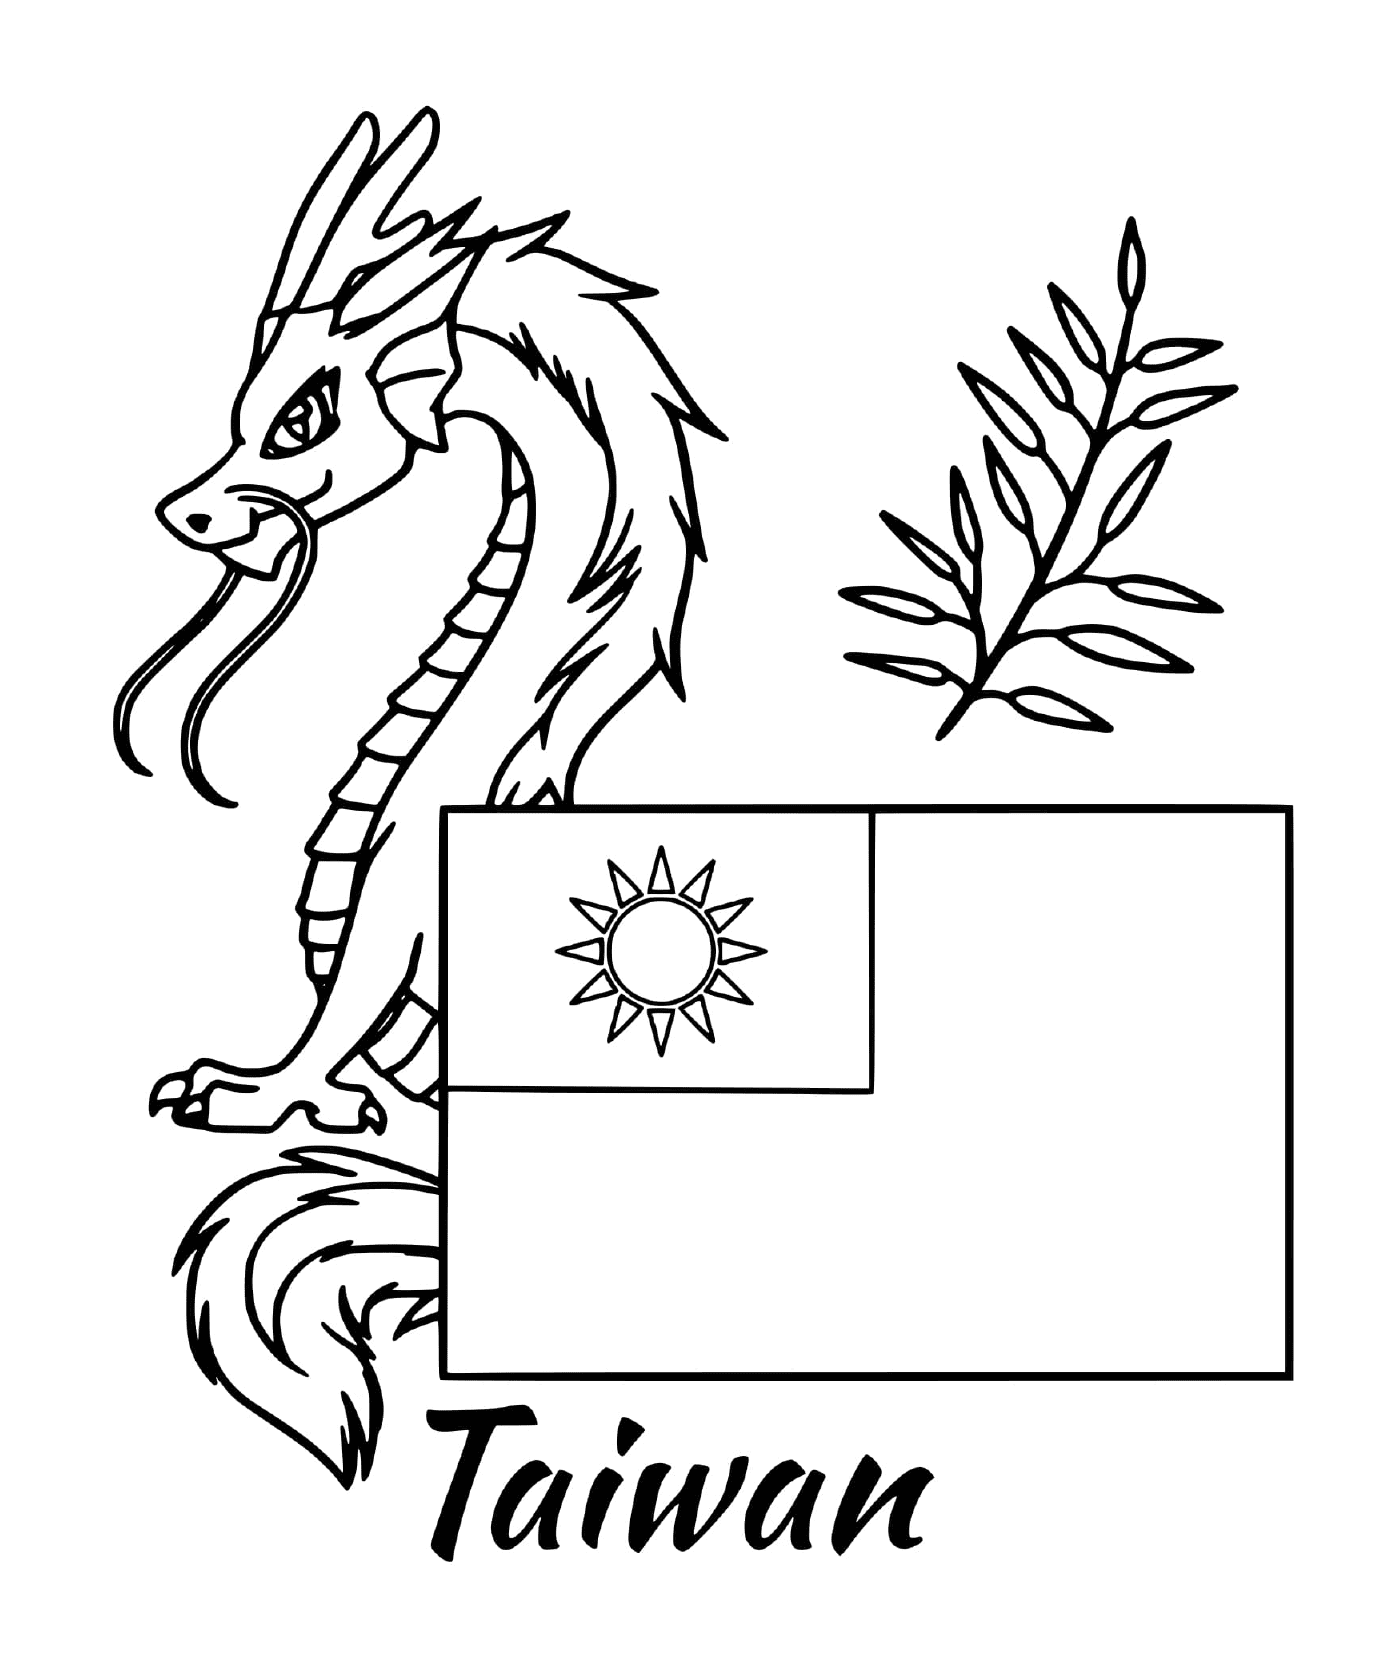  Bandeira de Taiwan com um dragão 